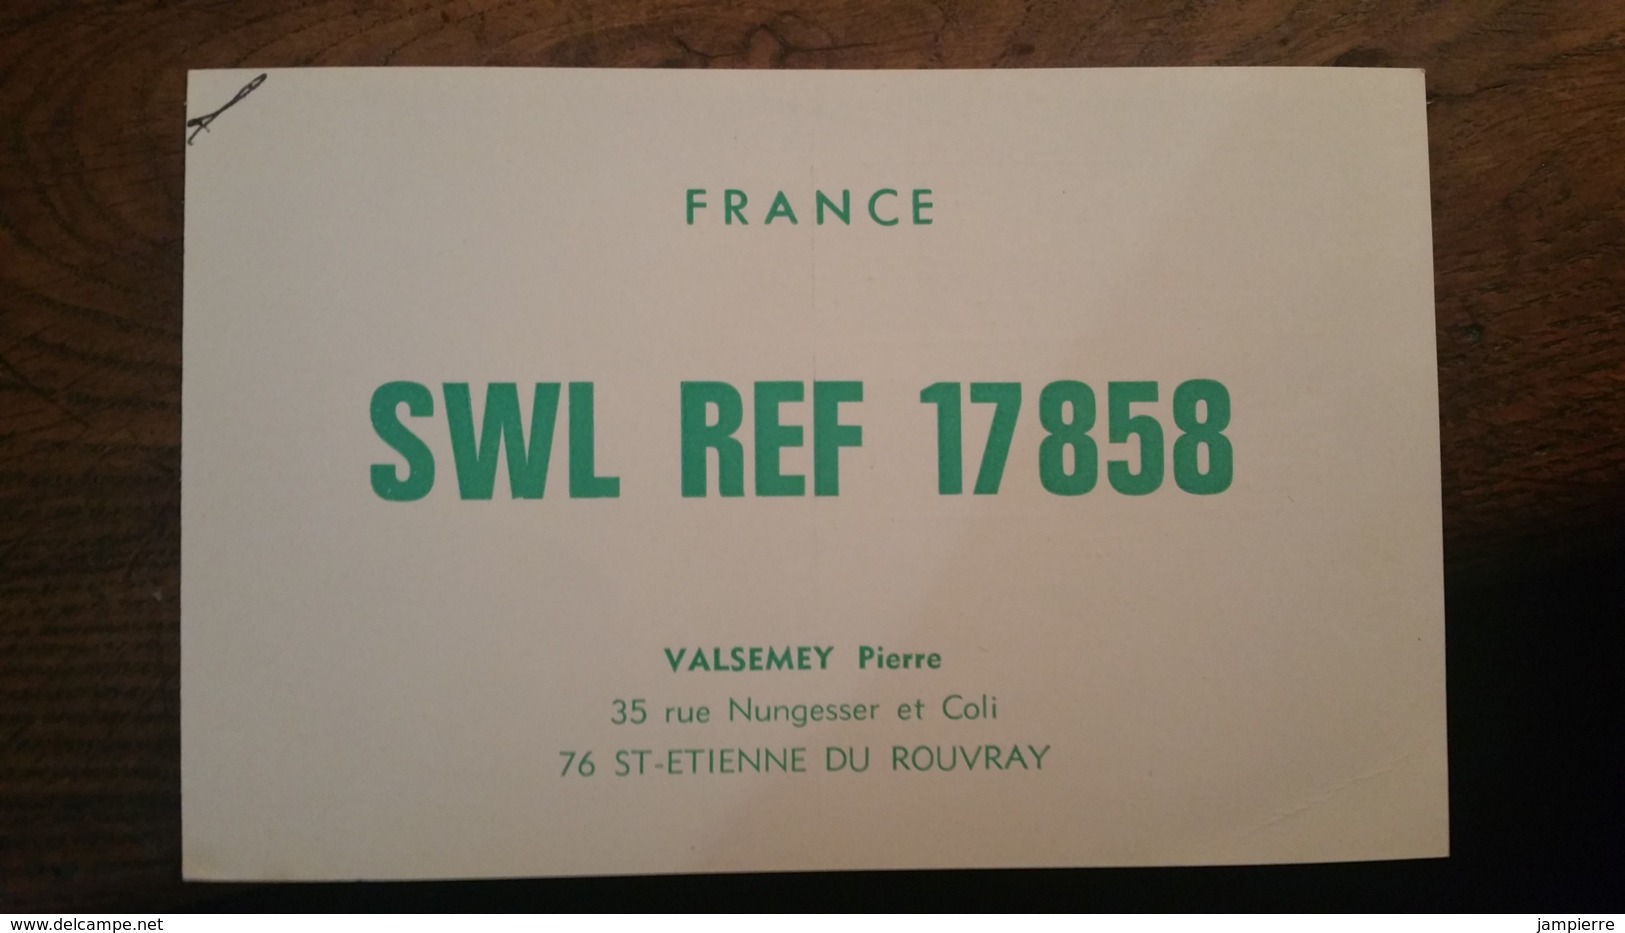 Carte QSL - France - St-Etienne-du-Rouvray (76) SWL REF 17858 - Amateurfunk